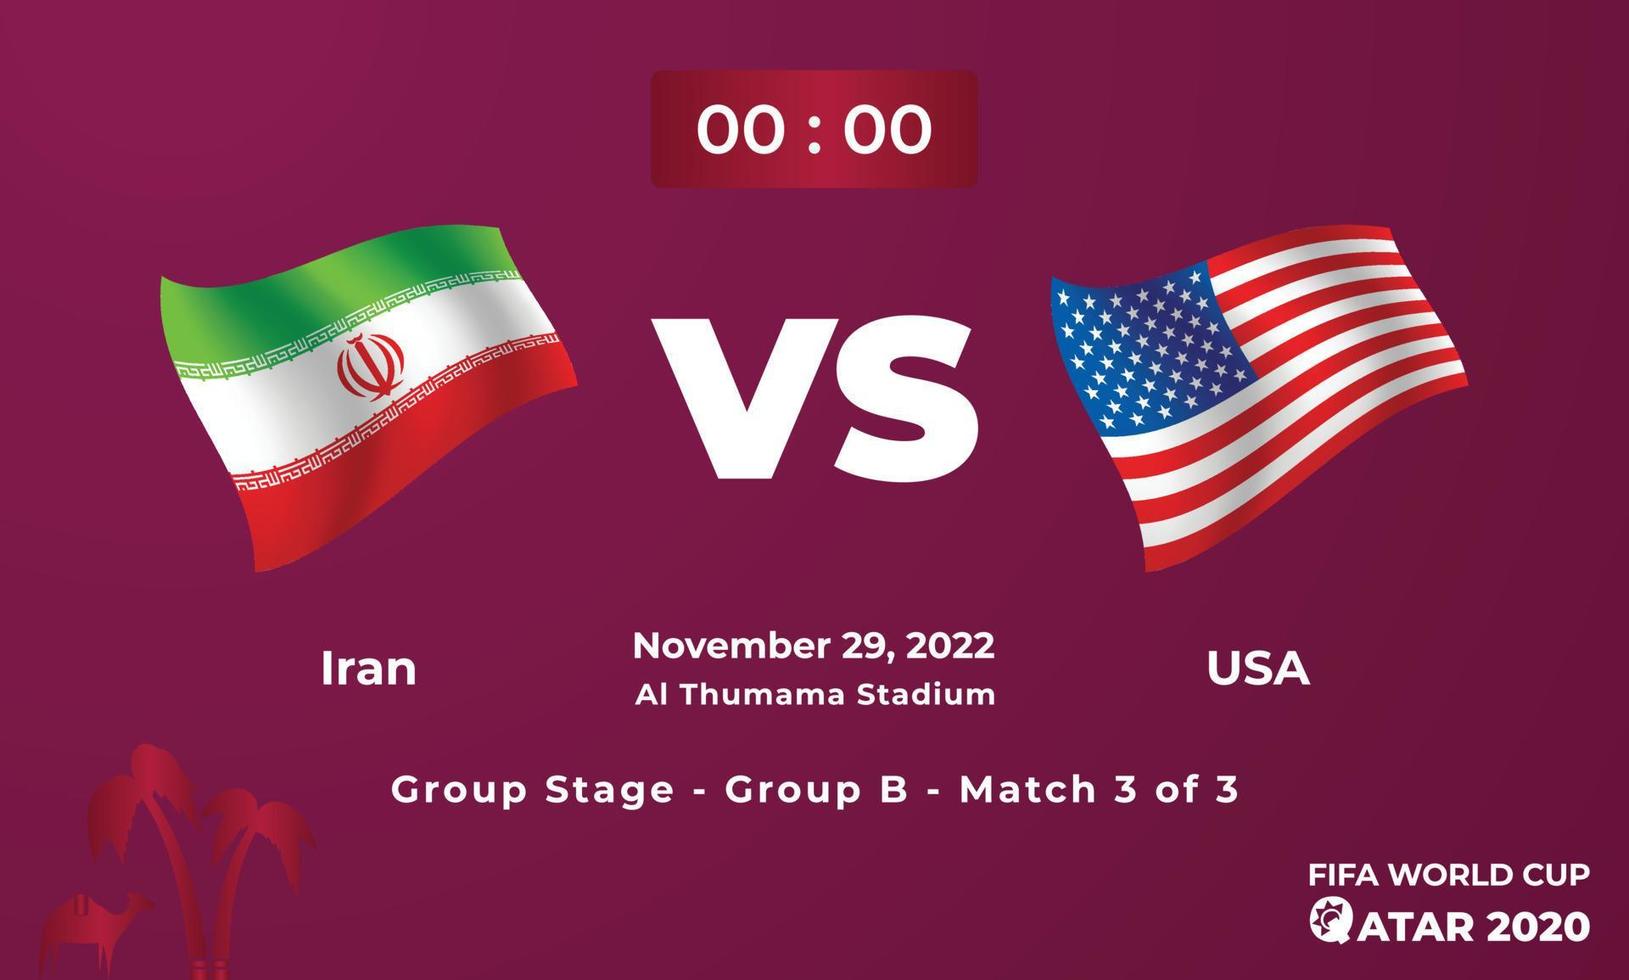 iran mot USA fotboll matchmall, fifa värld kopp i qatar 2022 vektor